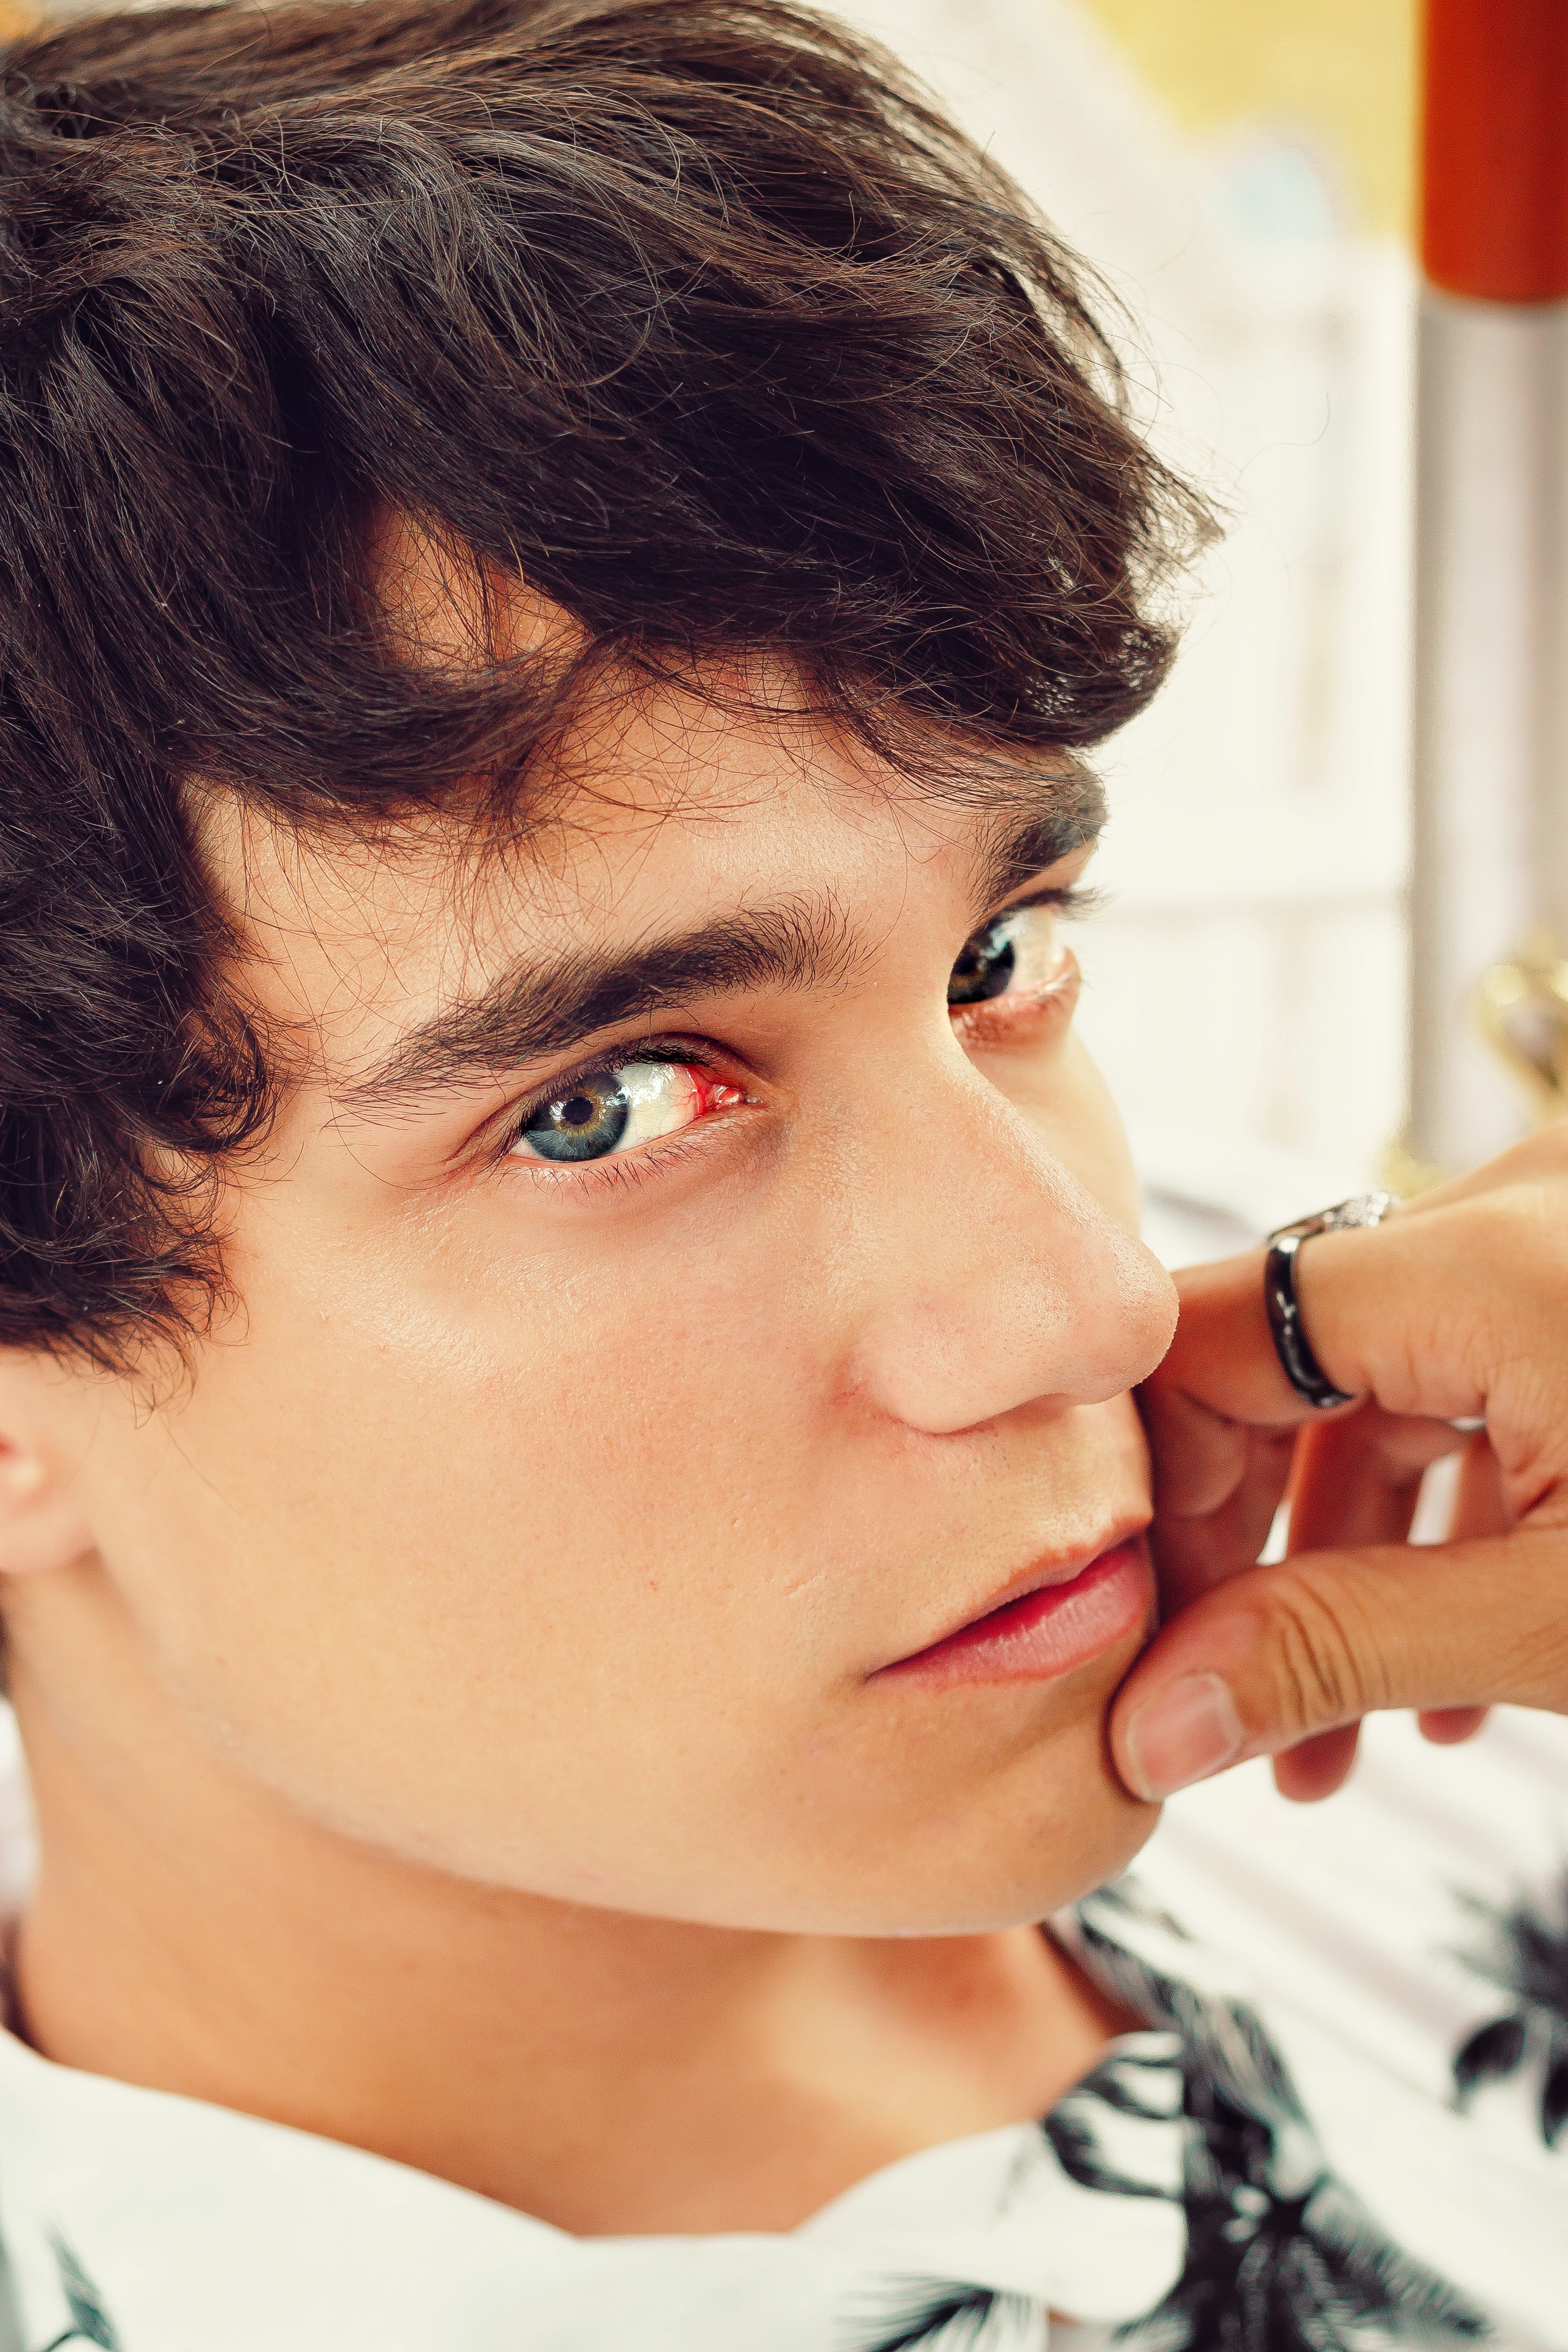 Você está visualizando atualmente Autoestima masculina: Homem também faz preenchimento labial